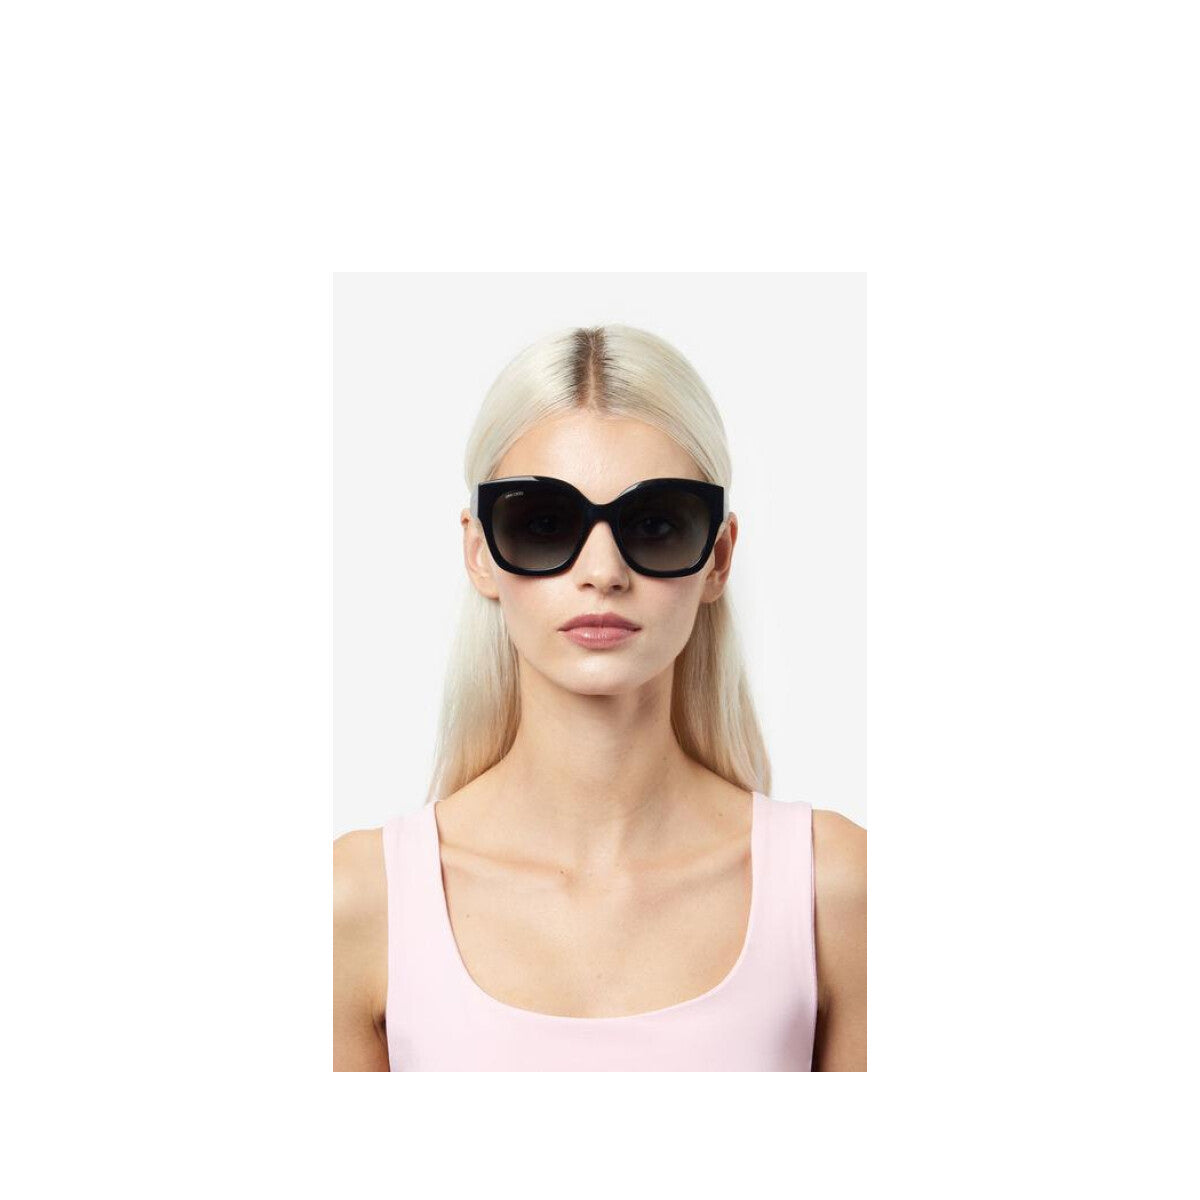 Leela/s 086/HA-Occhiali da sole-Jimmy Choo-La collezione eyewear Glitter Fabric di Jimmy Choo trae ispirazione dalle iconiche borse e scarpe del celebre marchio londinese. Caratterizzata da un'eleganza chic e un fascino glamour, questa linea si adatta perfettamente ai trend della stagione. Ogni modello è impreziosito da un inserto in tessuto glitter applicato a mano lungo le aste. Questo occhiale presenta una versatile silhouette squadrata dallo stile contemporaneo. Il logo inciso sulle aste conferisce un t